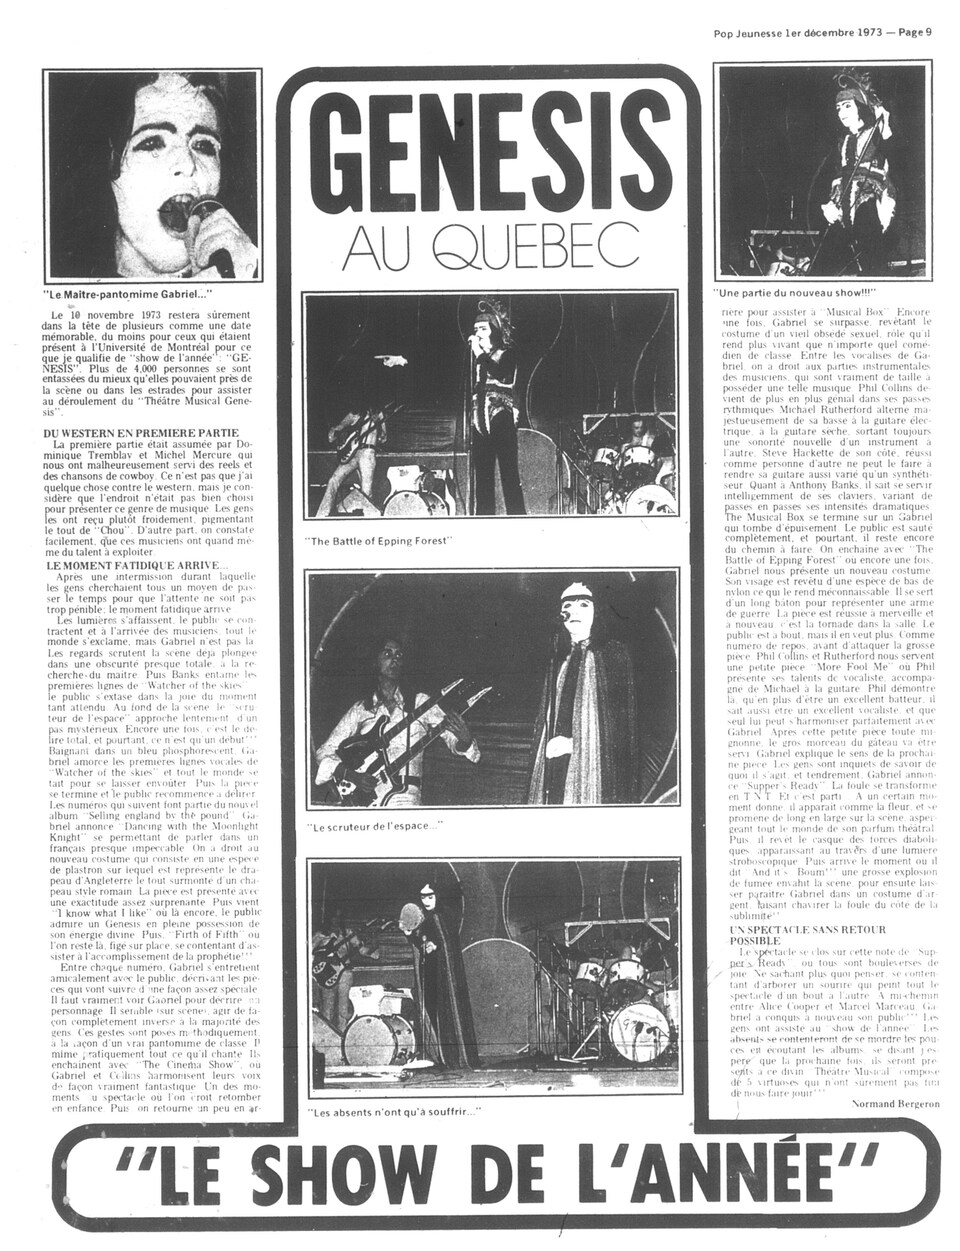 Article de journal annonçant la venue du groupe Genesis au Québec en 1973. 